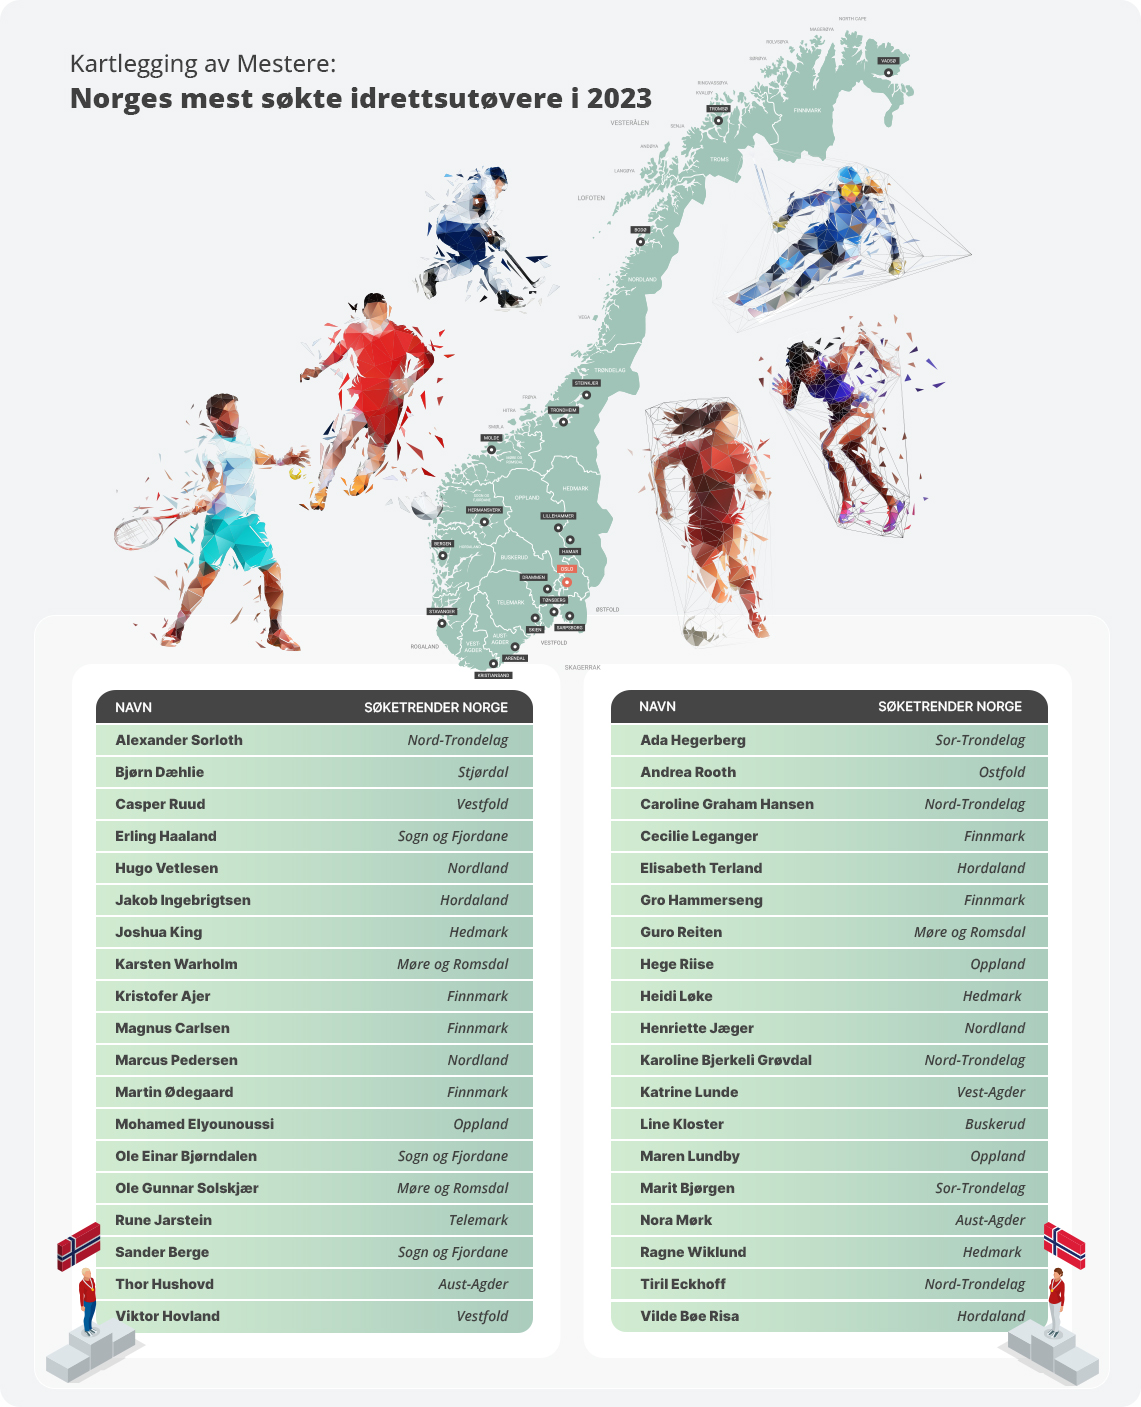 Kartlegging av Sportshelter: Idrettsutøvere i Norge som har blitt søkt opp flest ganger